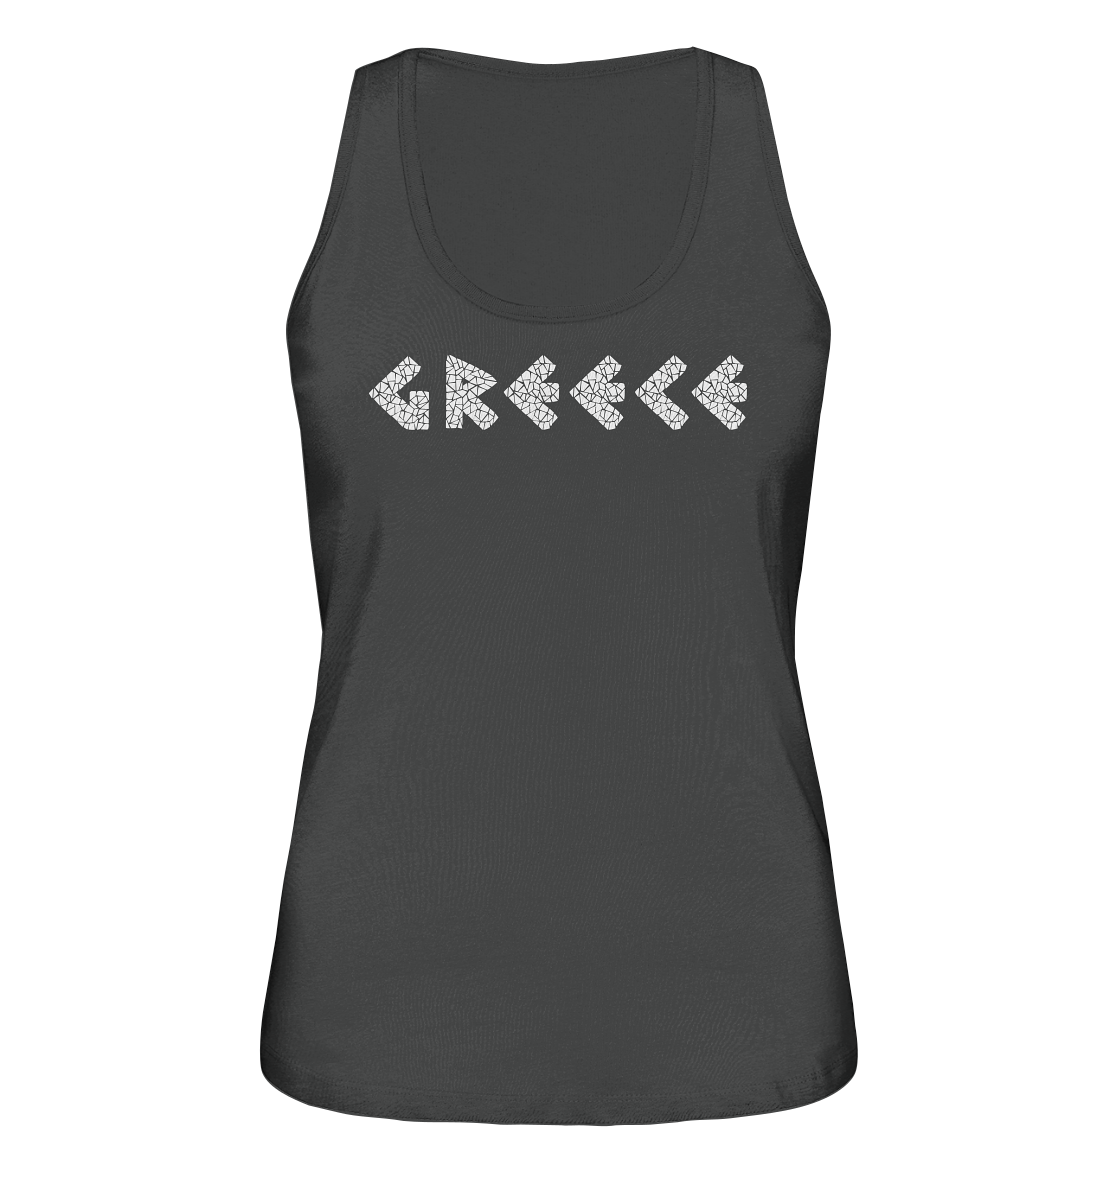 Greece Mosaik - Ladies Organic Tank-Top